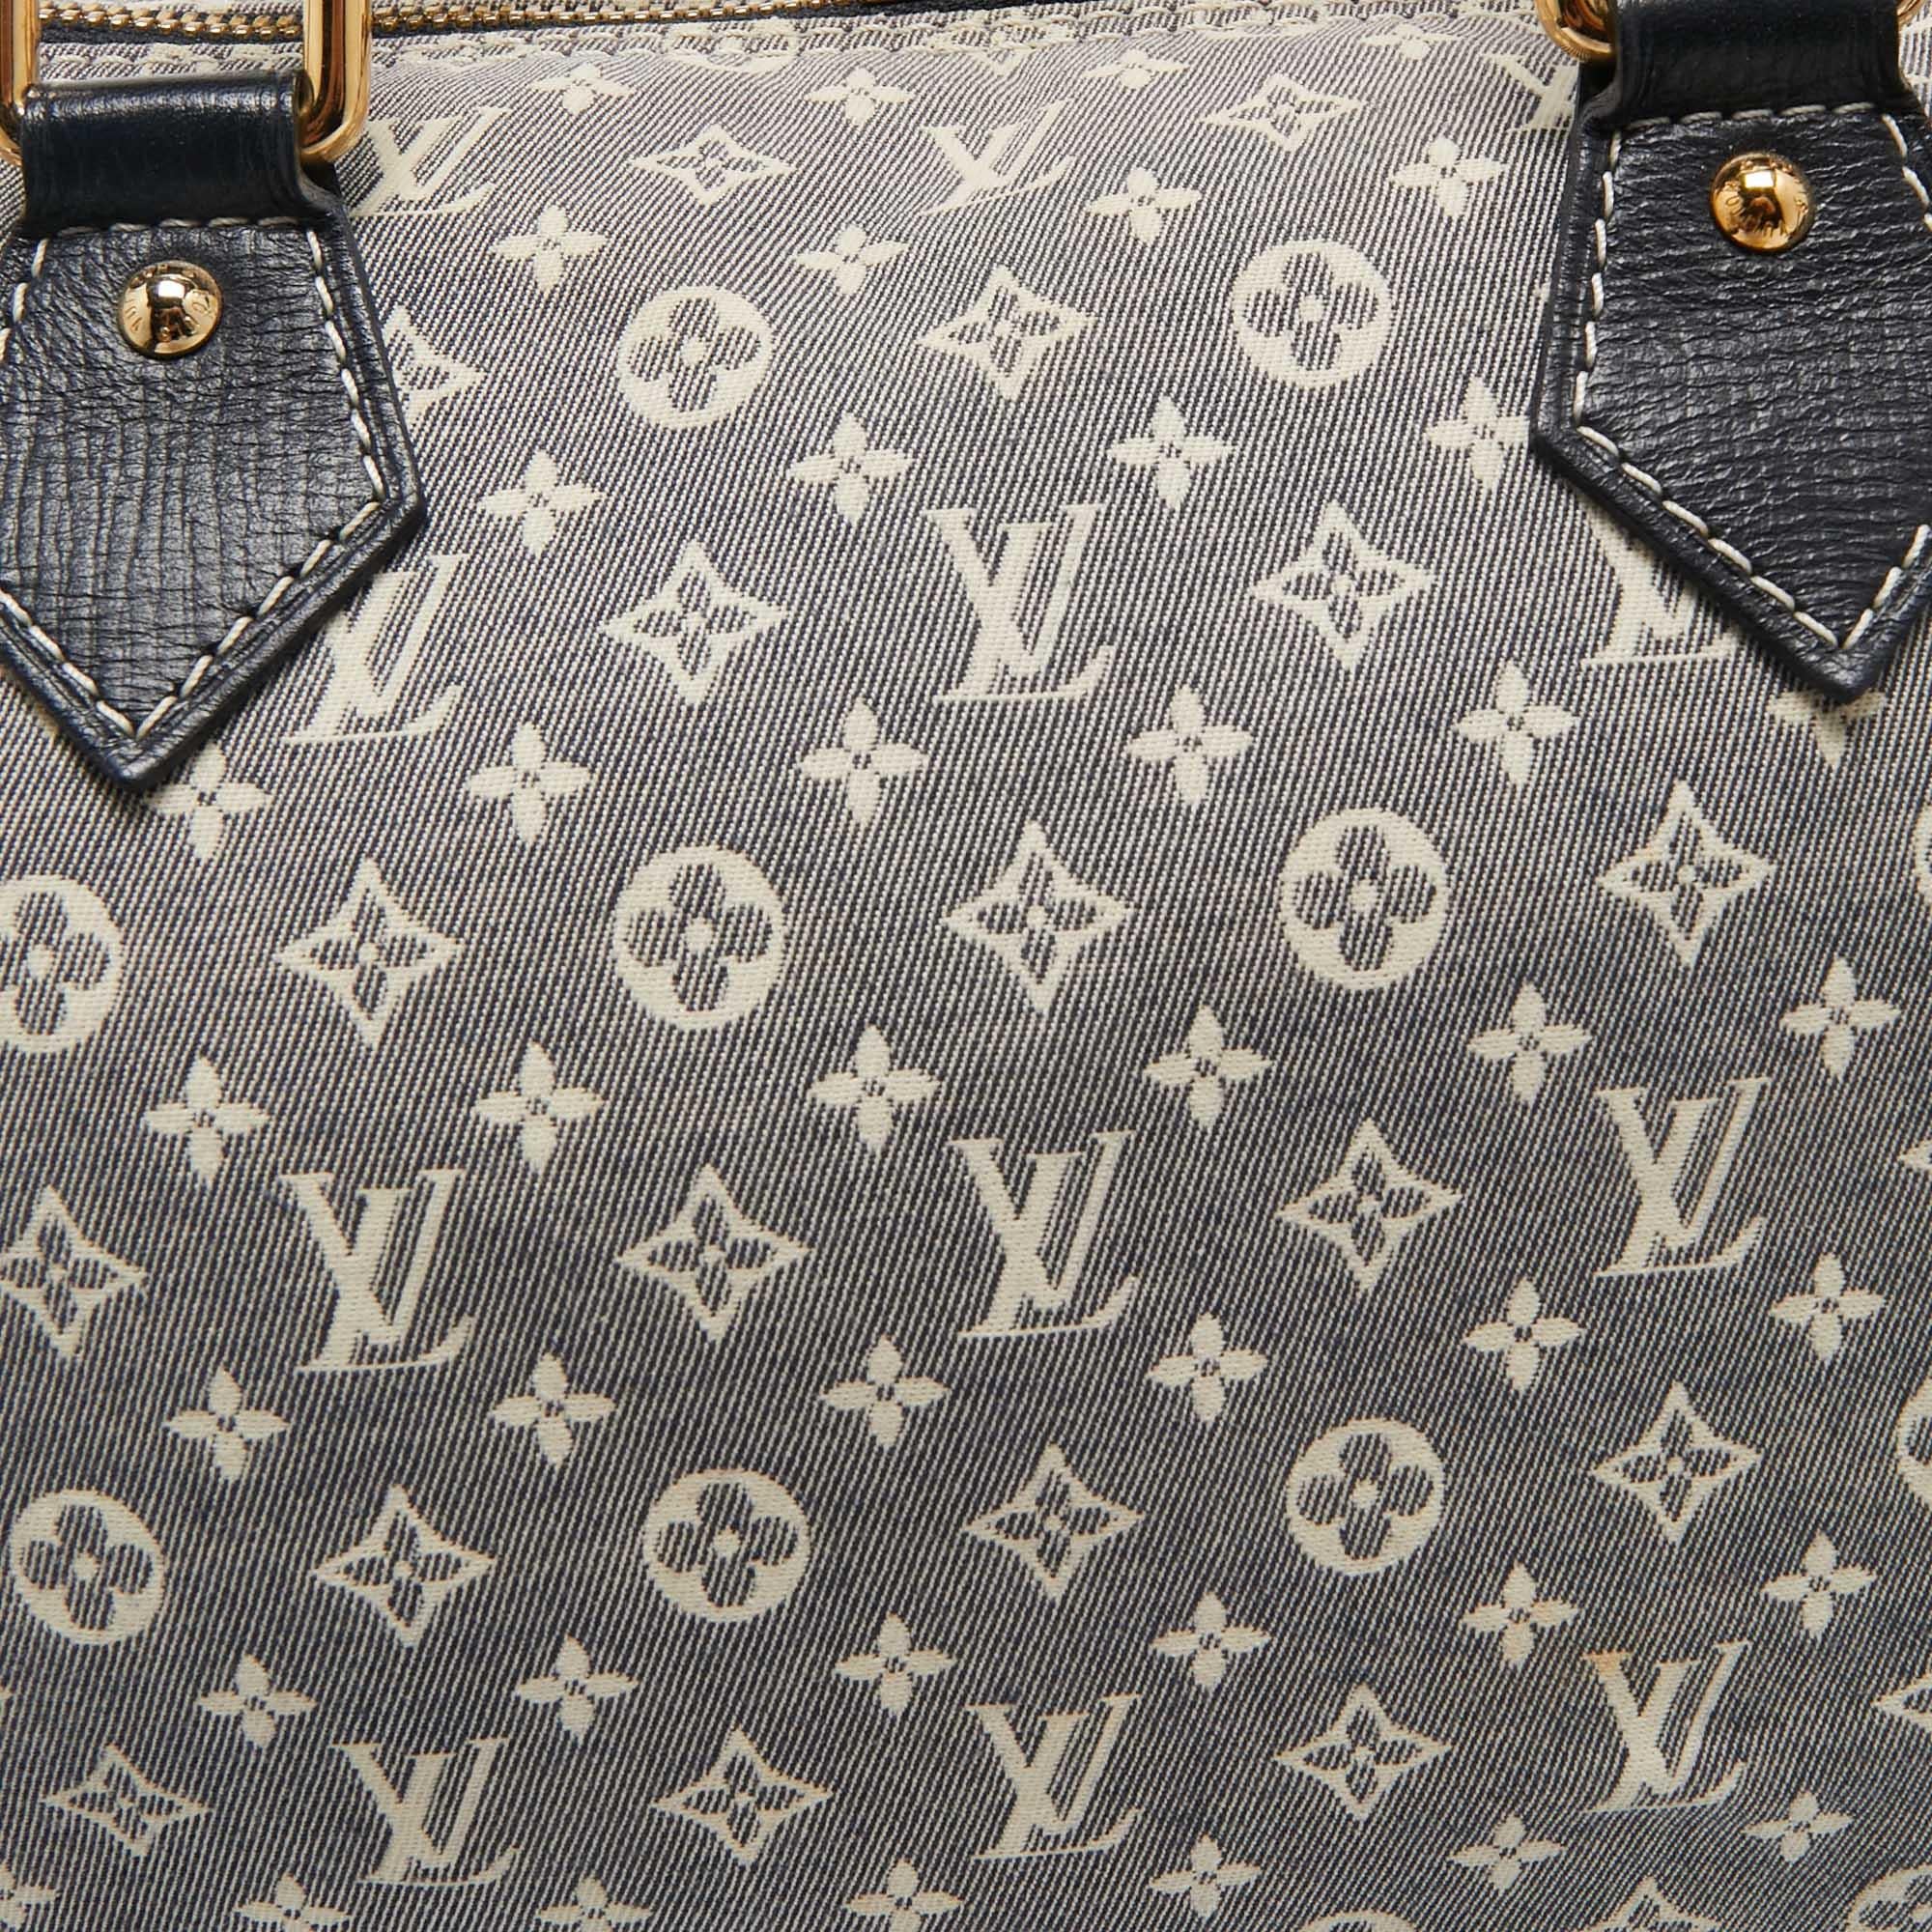 Louis Vuitton Encre Monogram Idylle Canvas Speedy Bandouliere 30 Bag For Sale 6